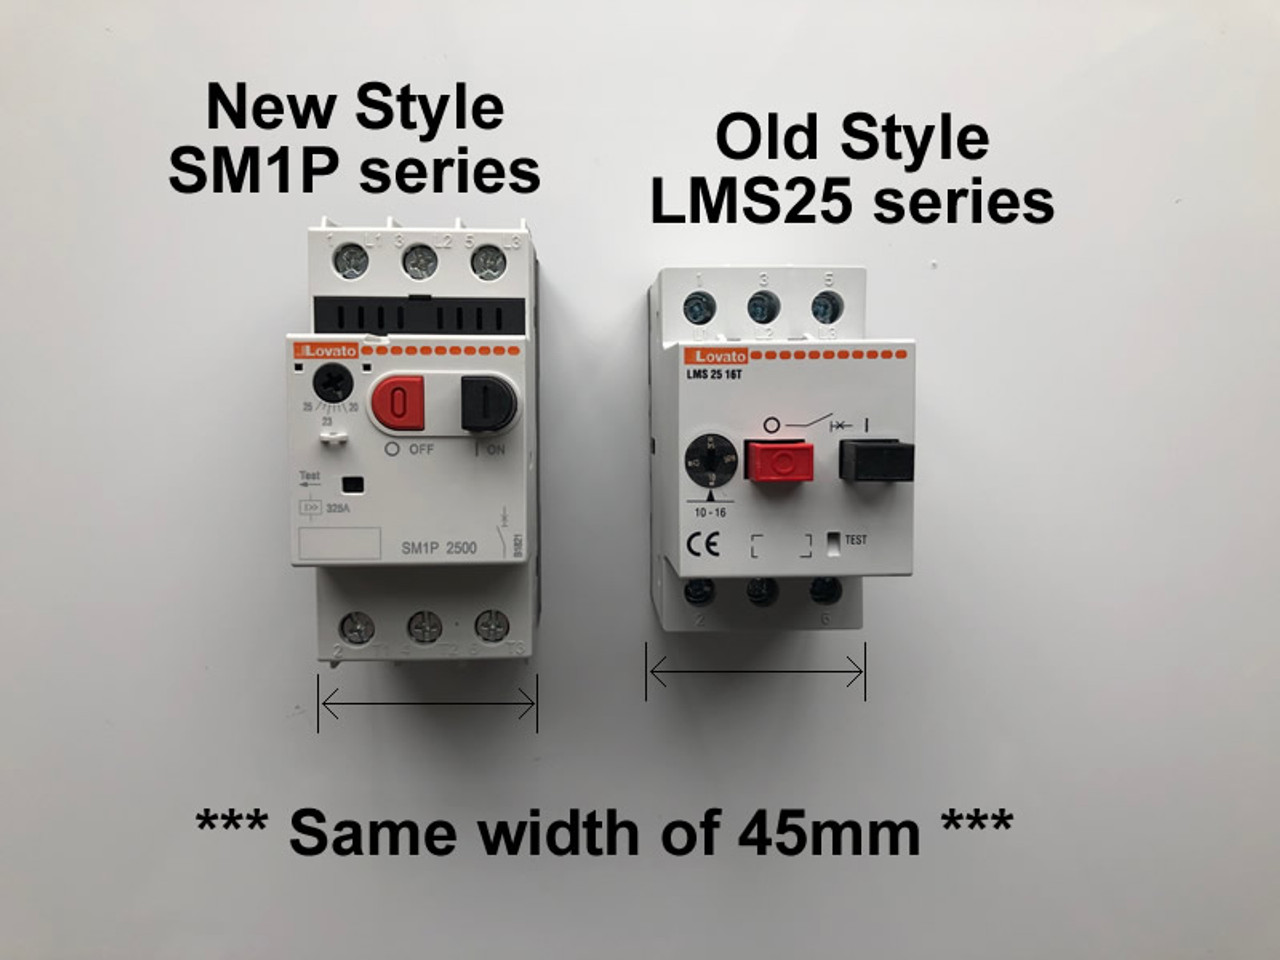 SM1P3200